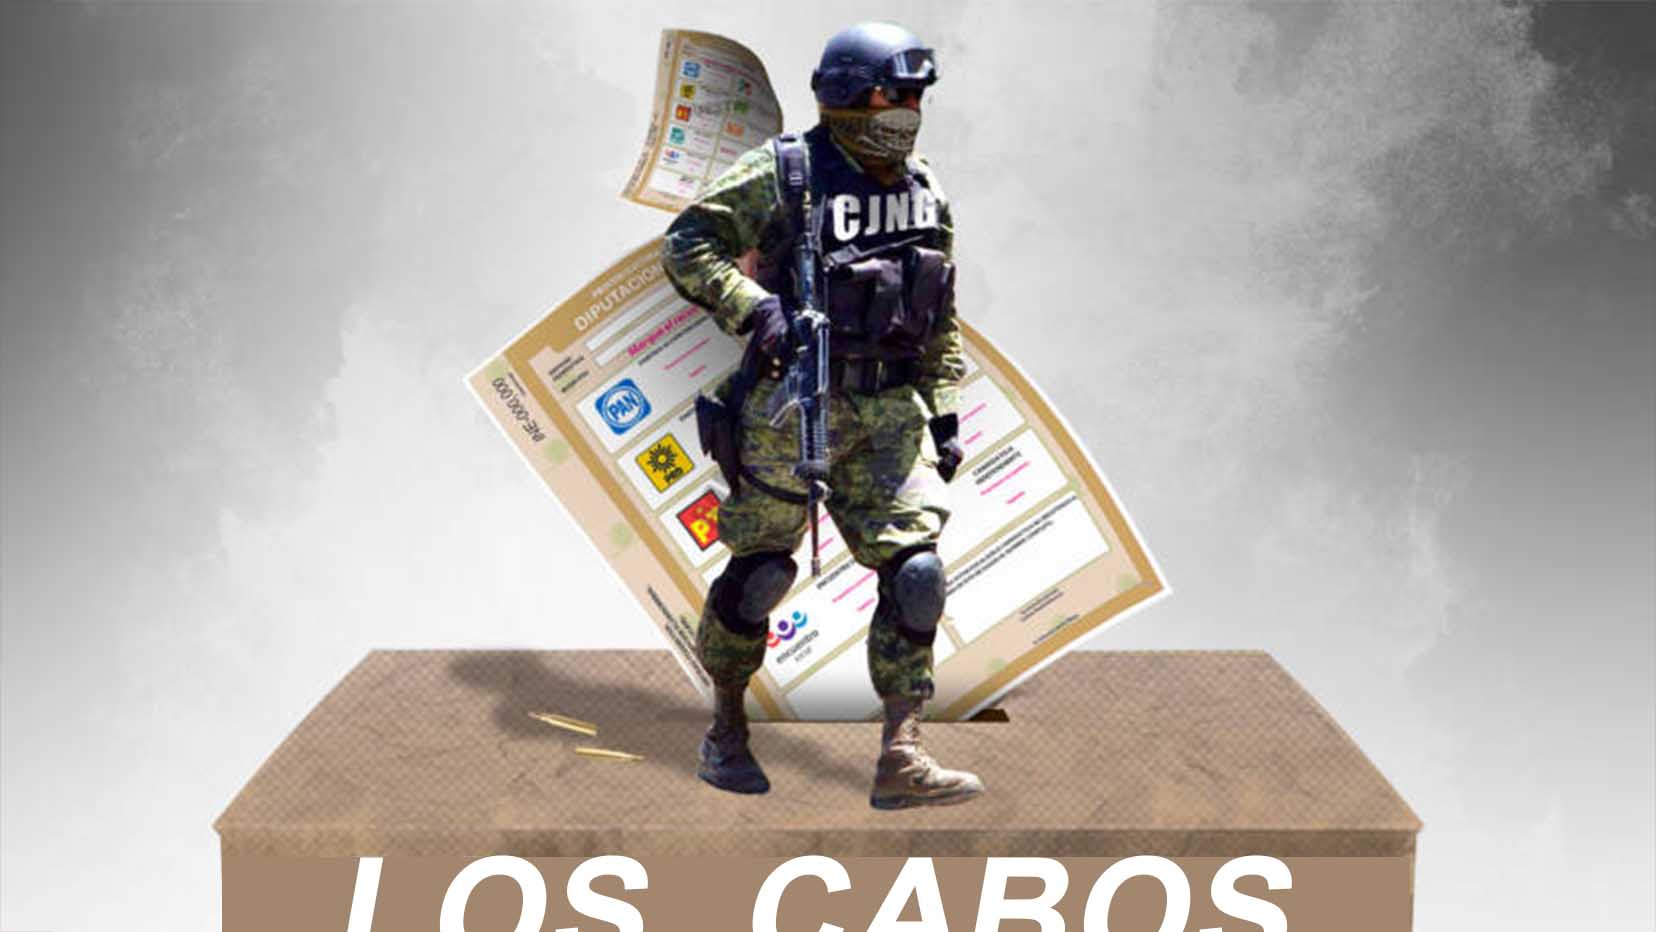 Una jornada electoral segura y sin la intromisión del “narco” exigen panistas en BCS